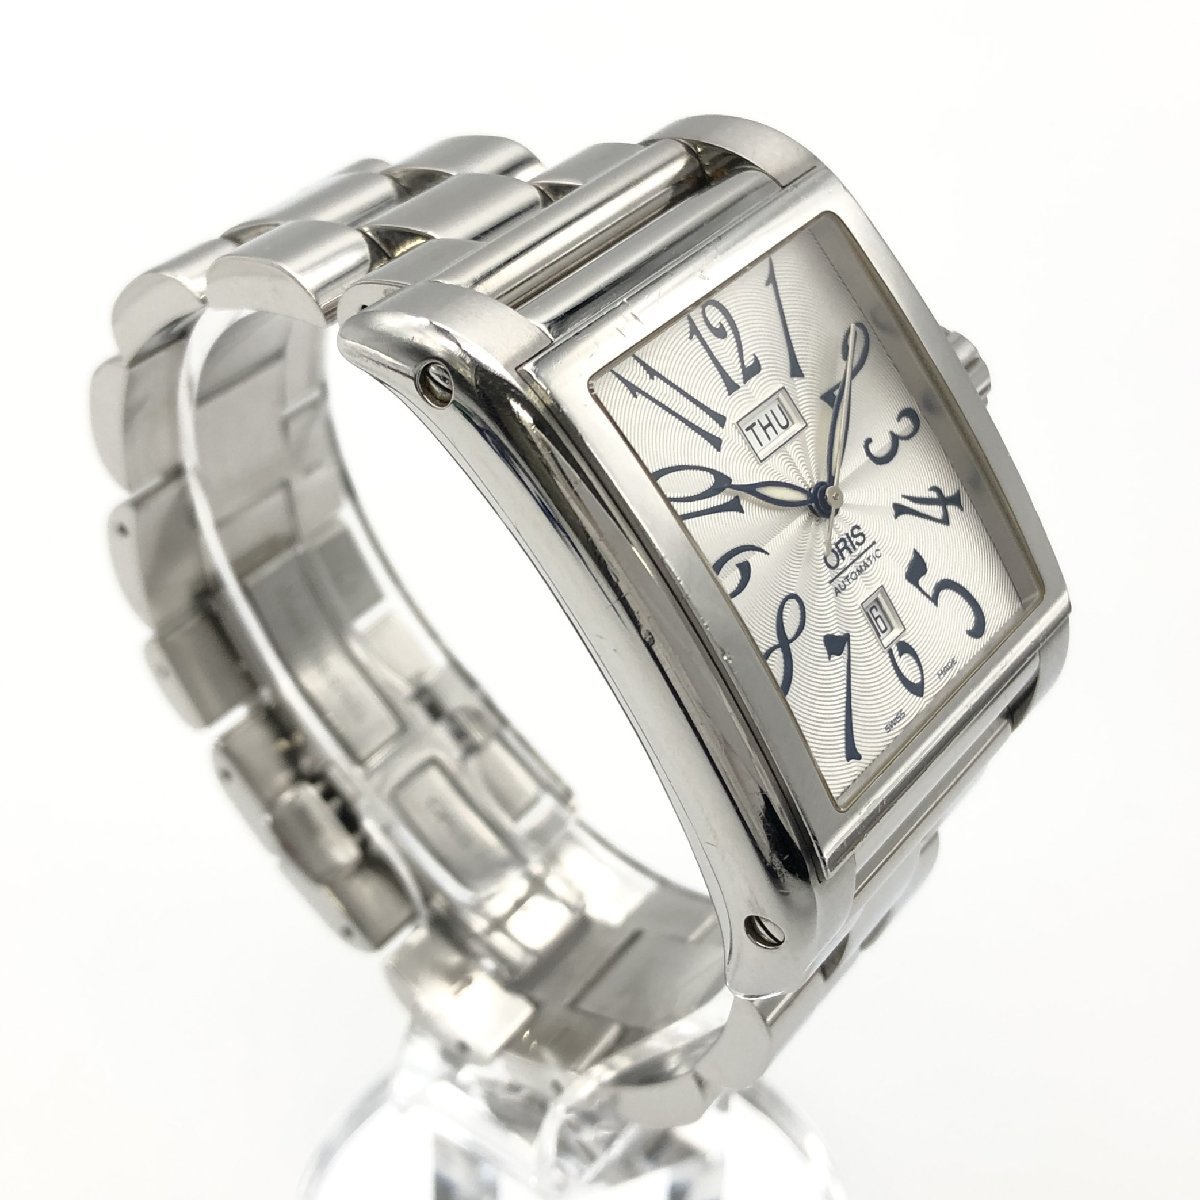 稼働品 ORIS オリス 腕時計 レクタンギュラー 7538 デイデイト スクエア 自動巻き AT メンズ シルバー文字盤 裏スケ ステンレス_画像2